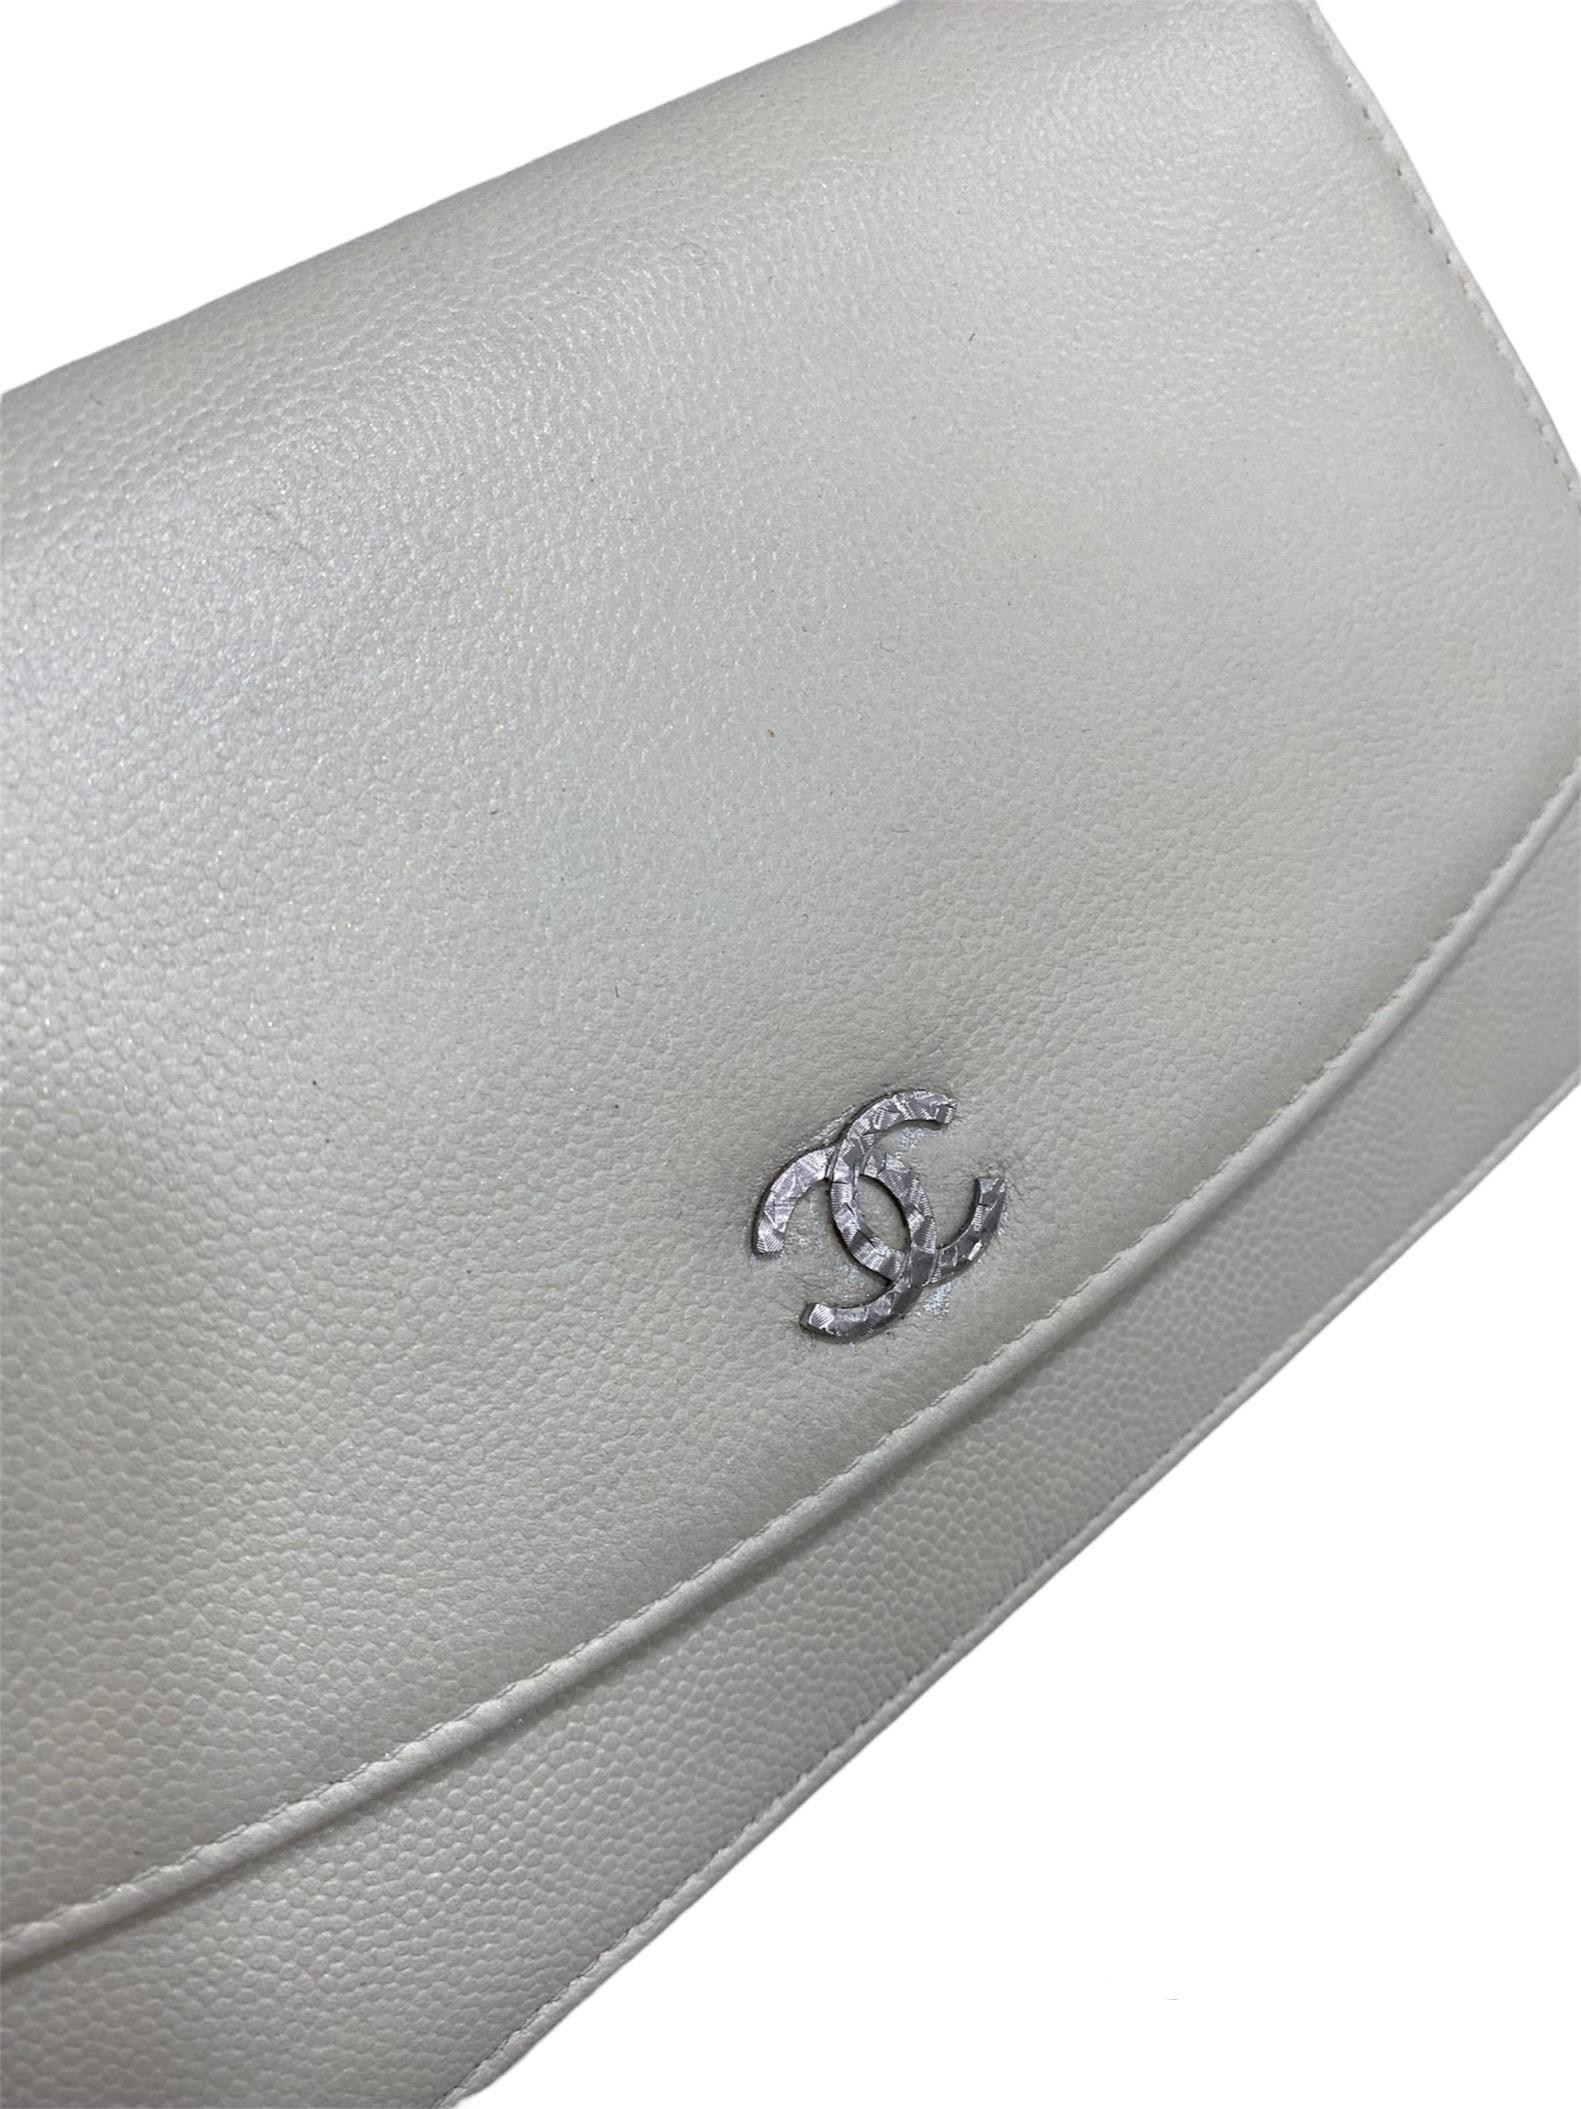 Chanel Woc White Shoulder Bag 1